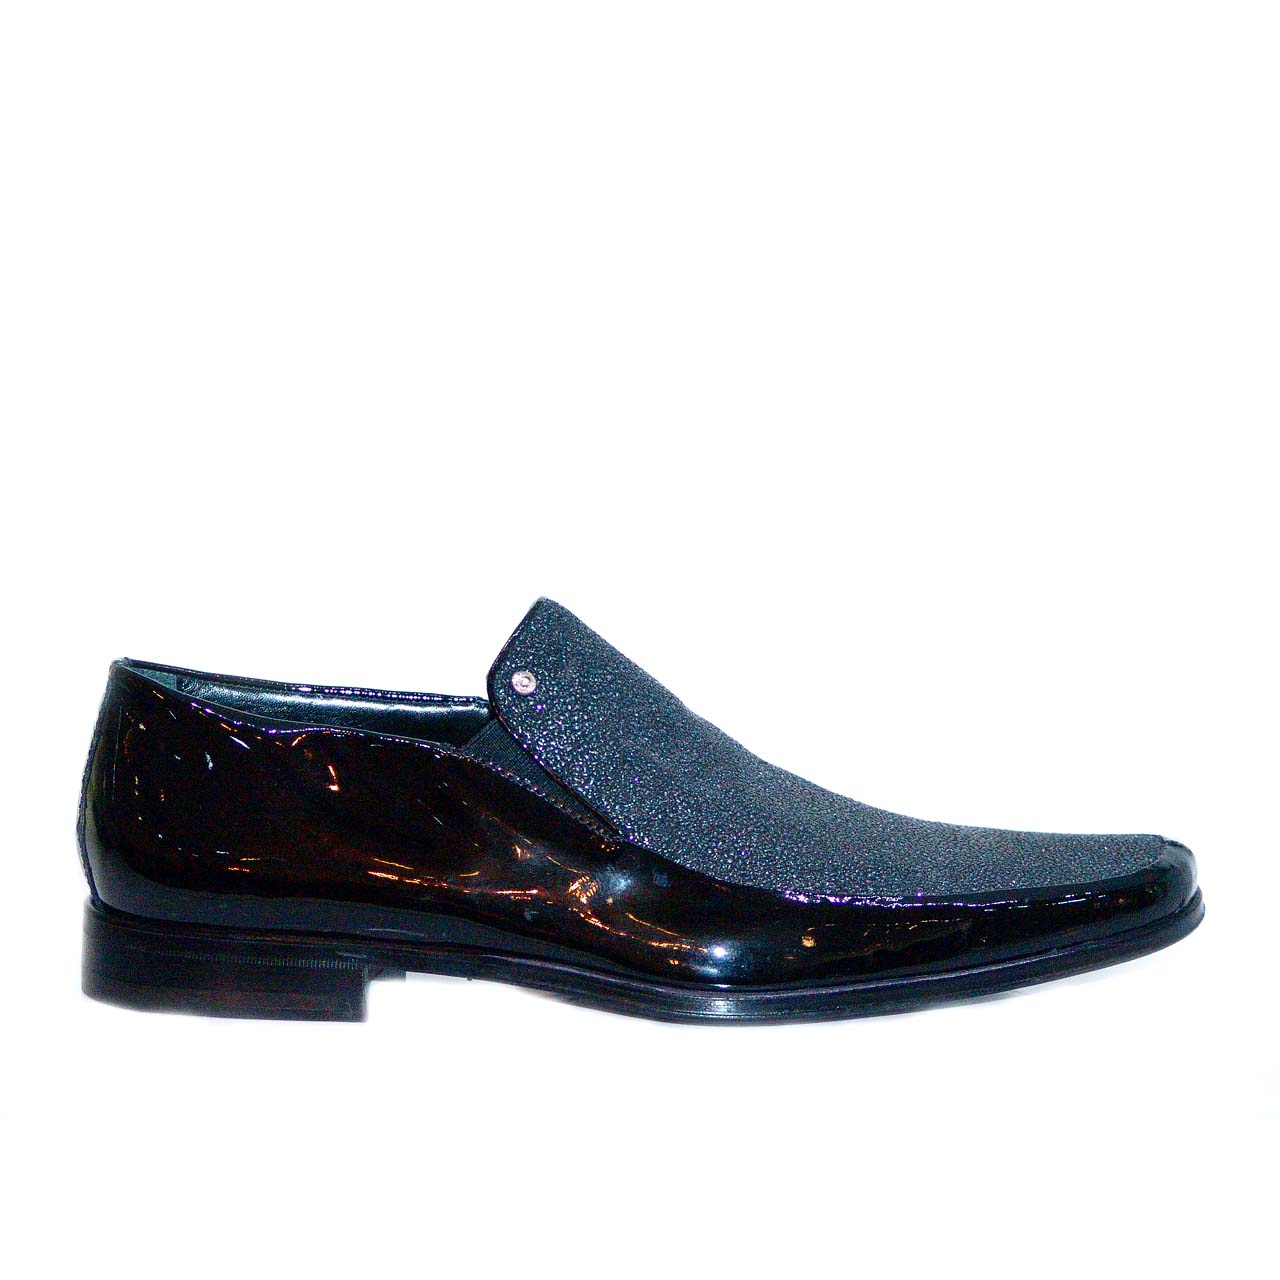 Aldo Brue 778 Patent Leather & Crystal Loafer - Black